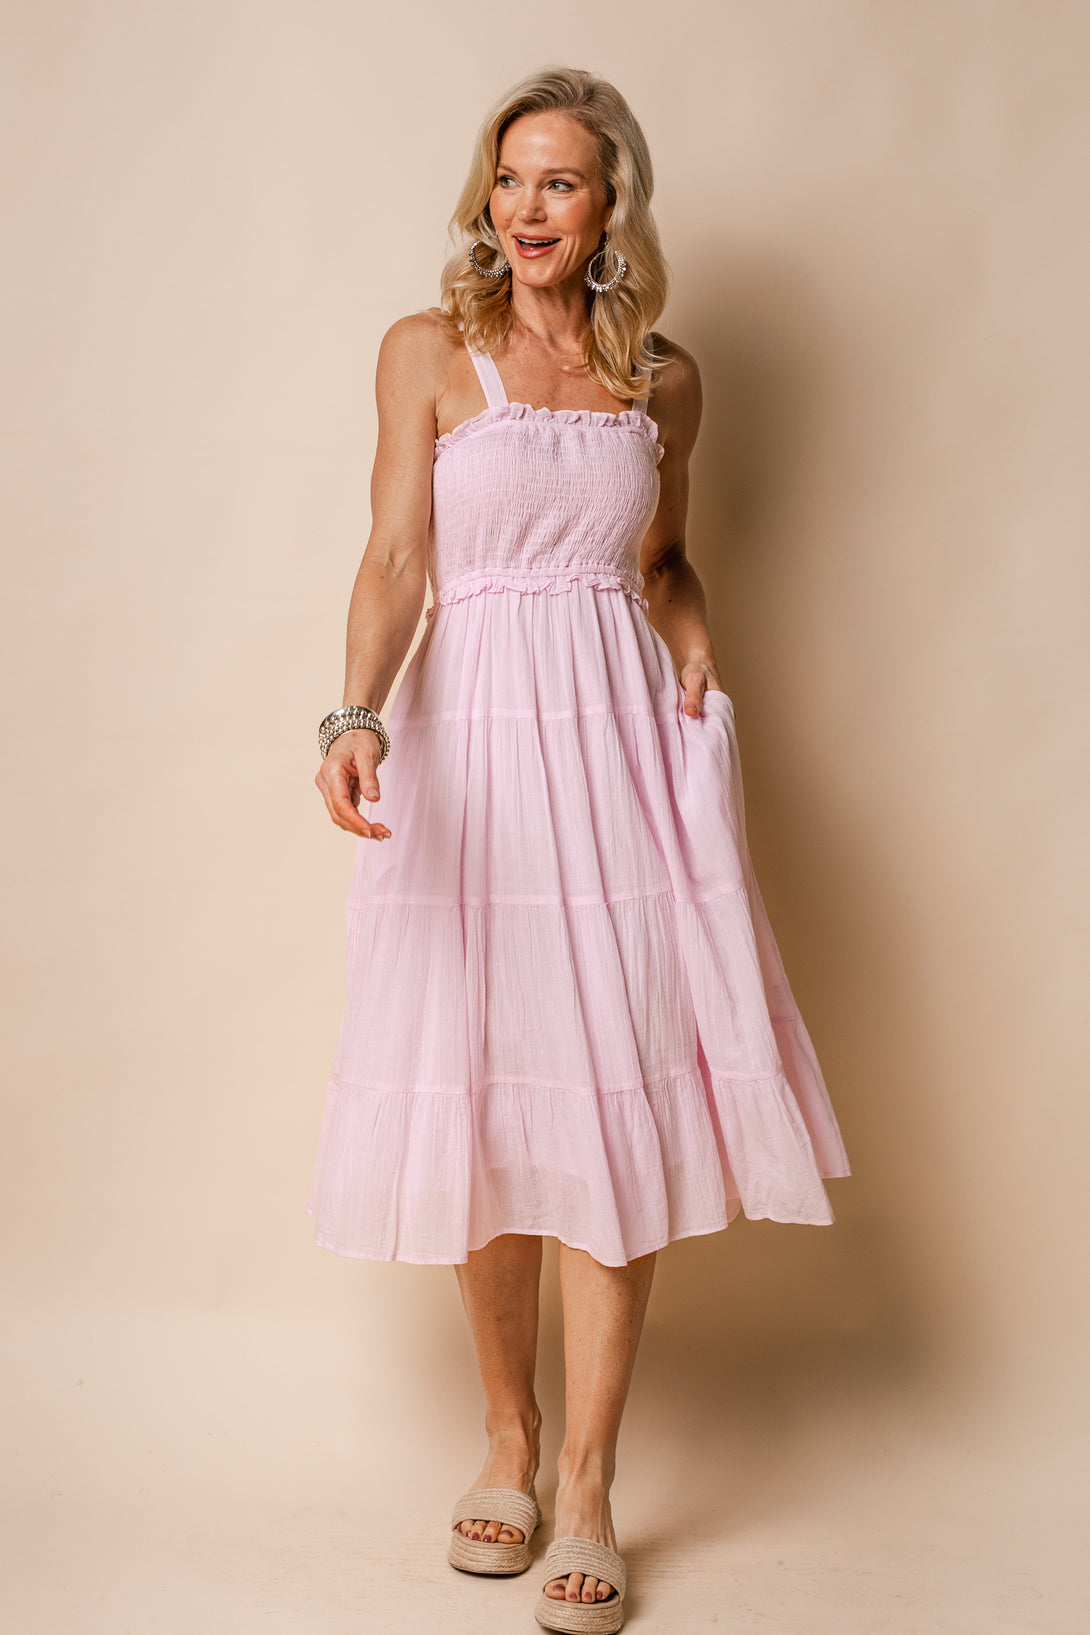 Pia Cotton Dress in Blush - Imagine Fashion